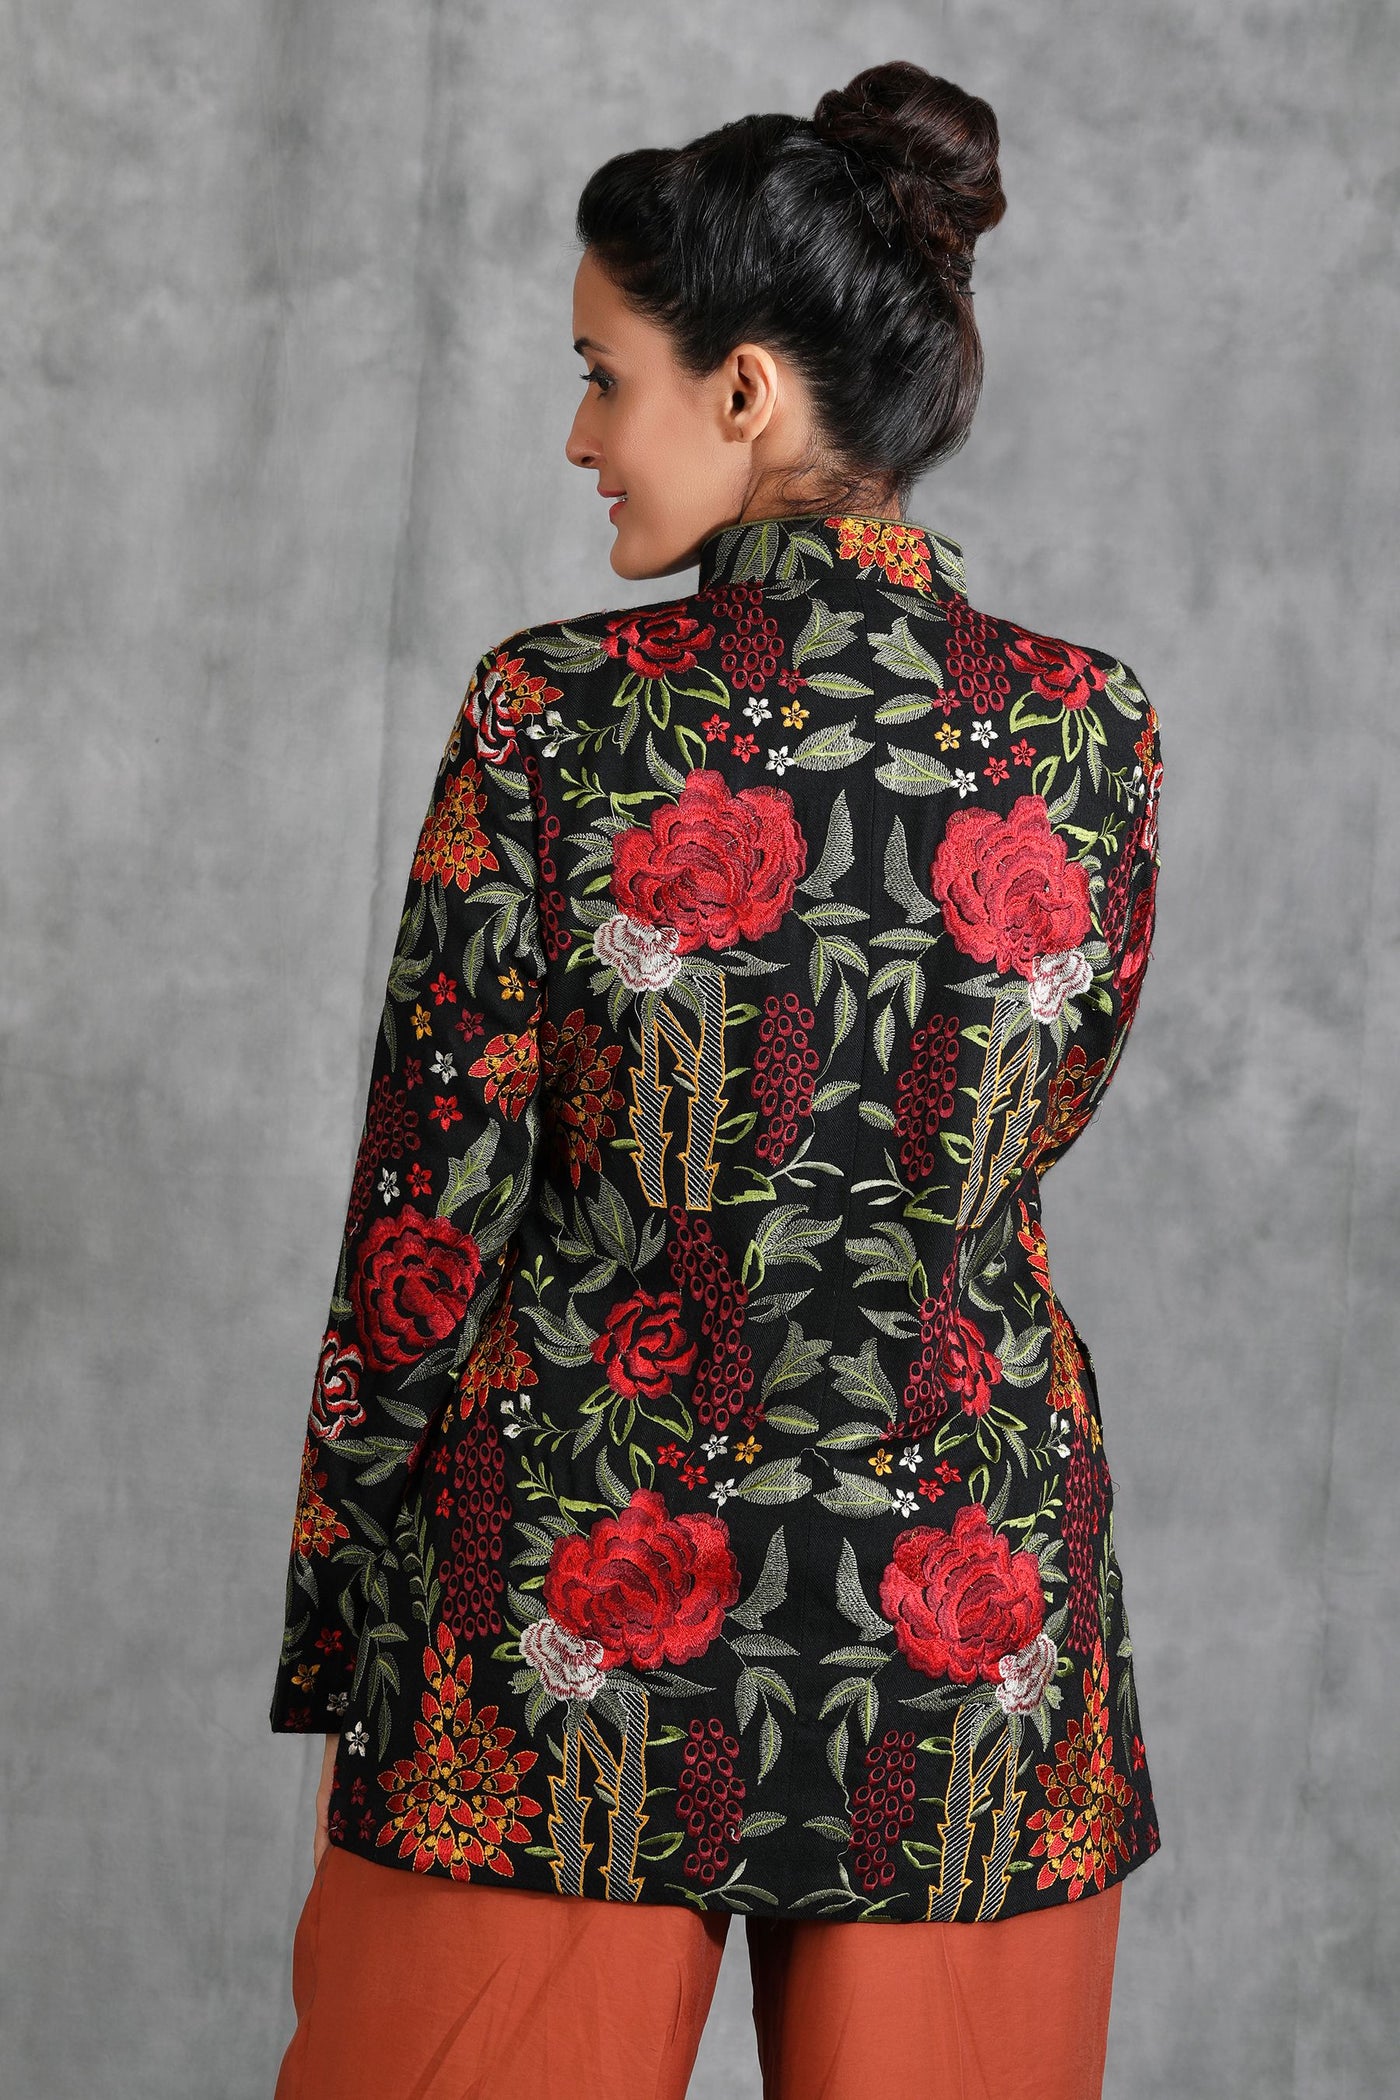 Black Floral Embroidered Jacket